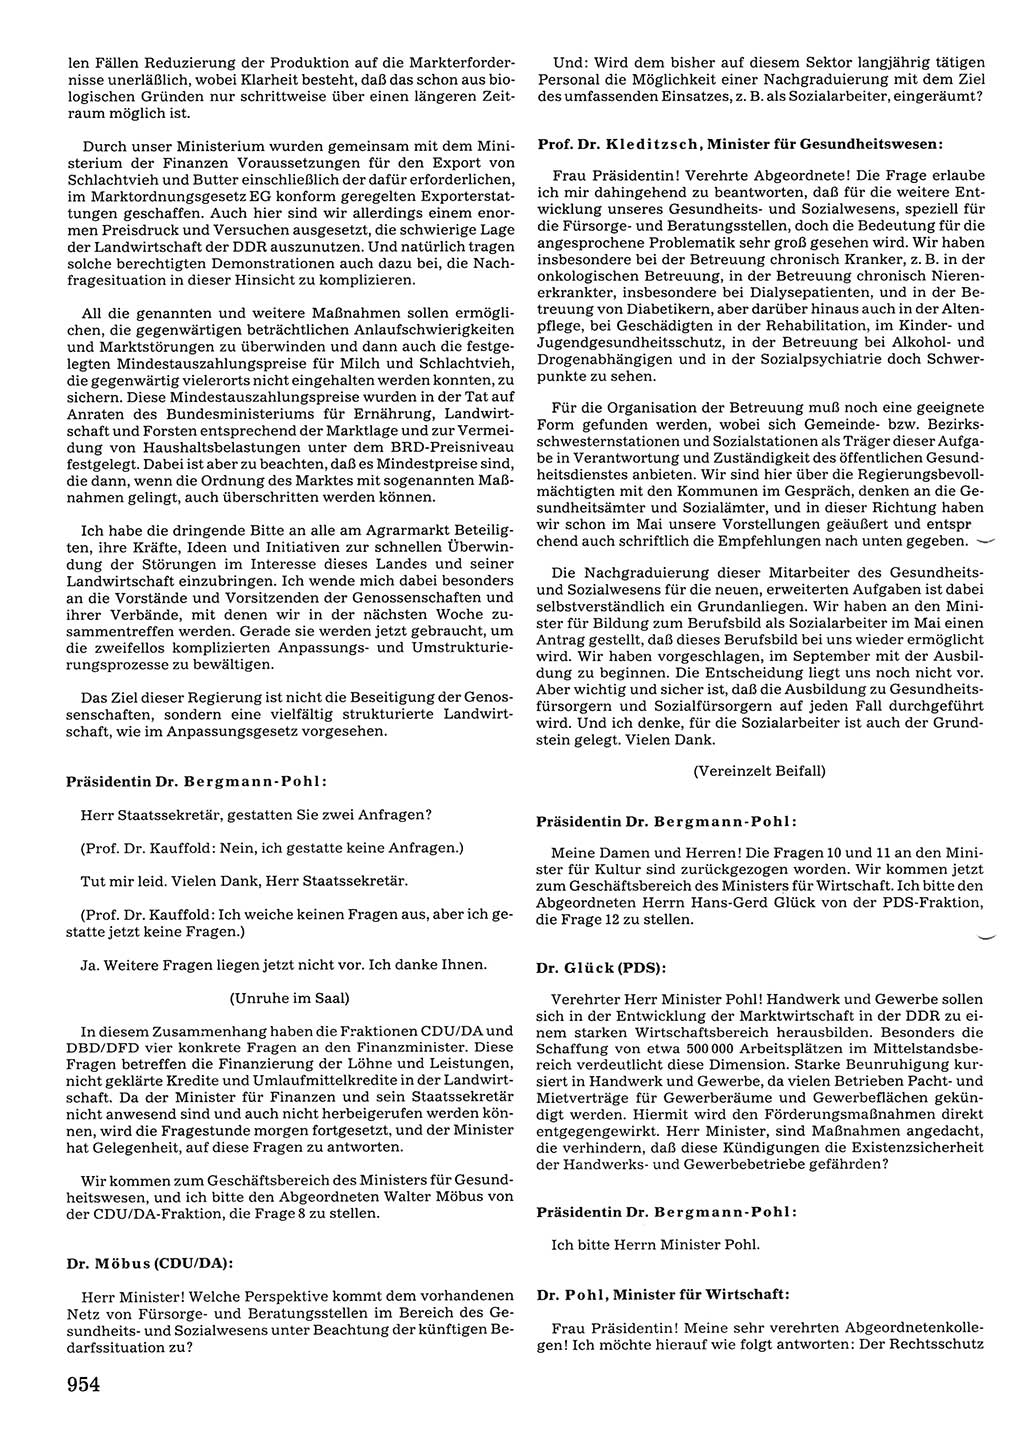 Tagungen der Volkskammer (VK) der Deutschen Demokratischen Republik (DDR), 10. Wahlperiode 1990, Seite 954 (VK. DDR 10. WP. 1990, Prot. Tg. 1-38, 5.4.-2.10.1990, S. 954)